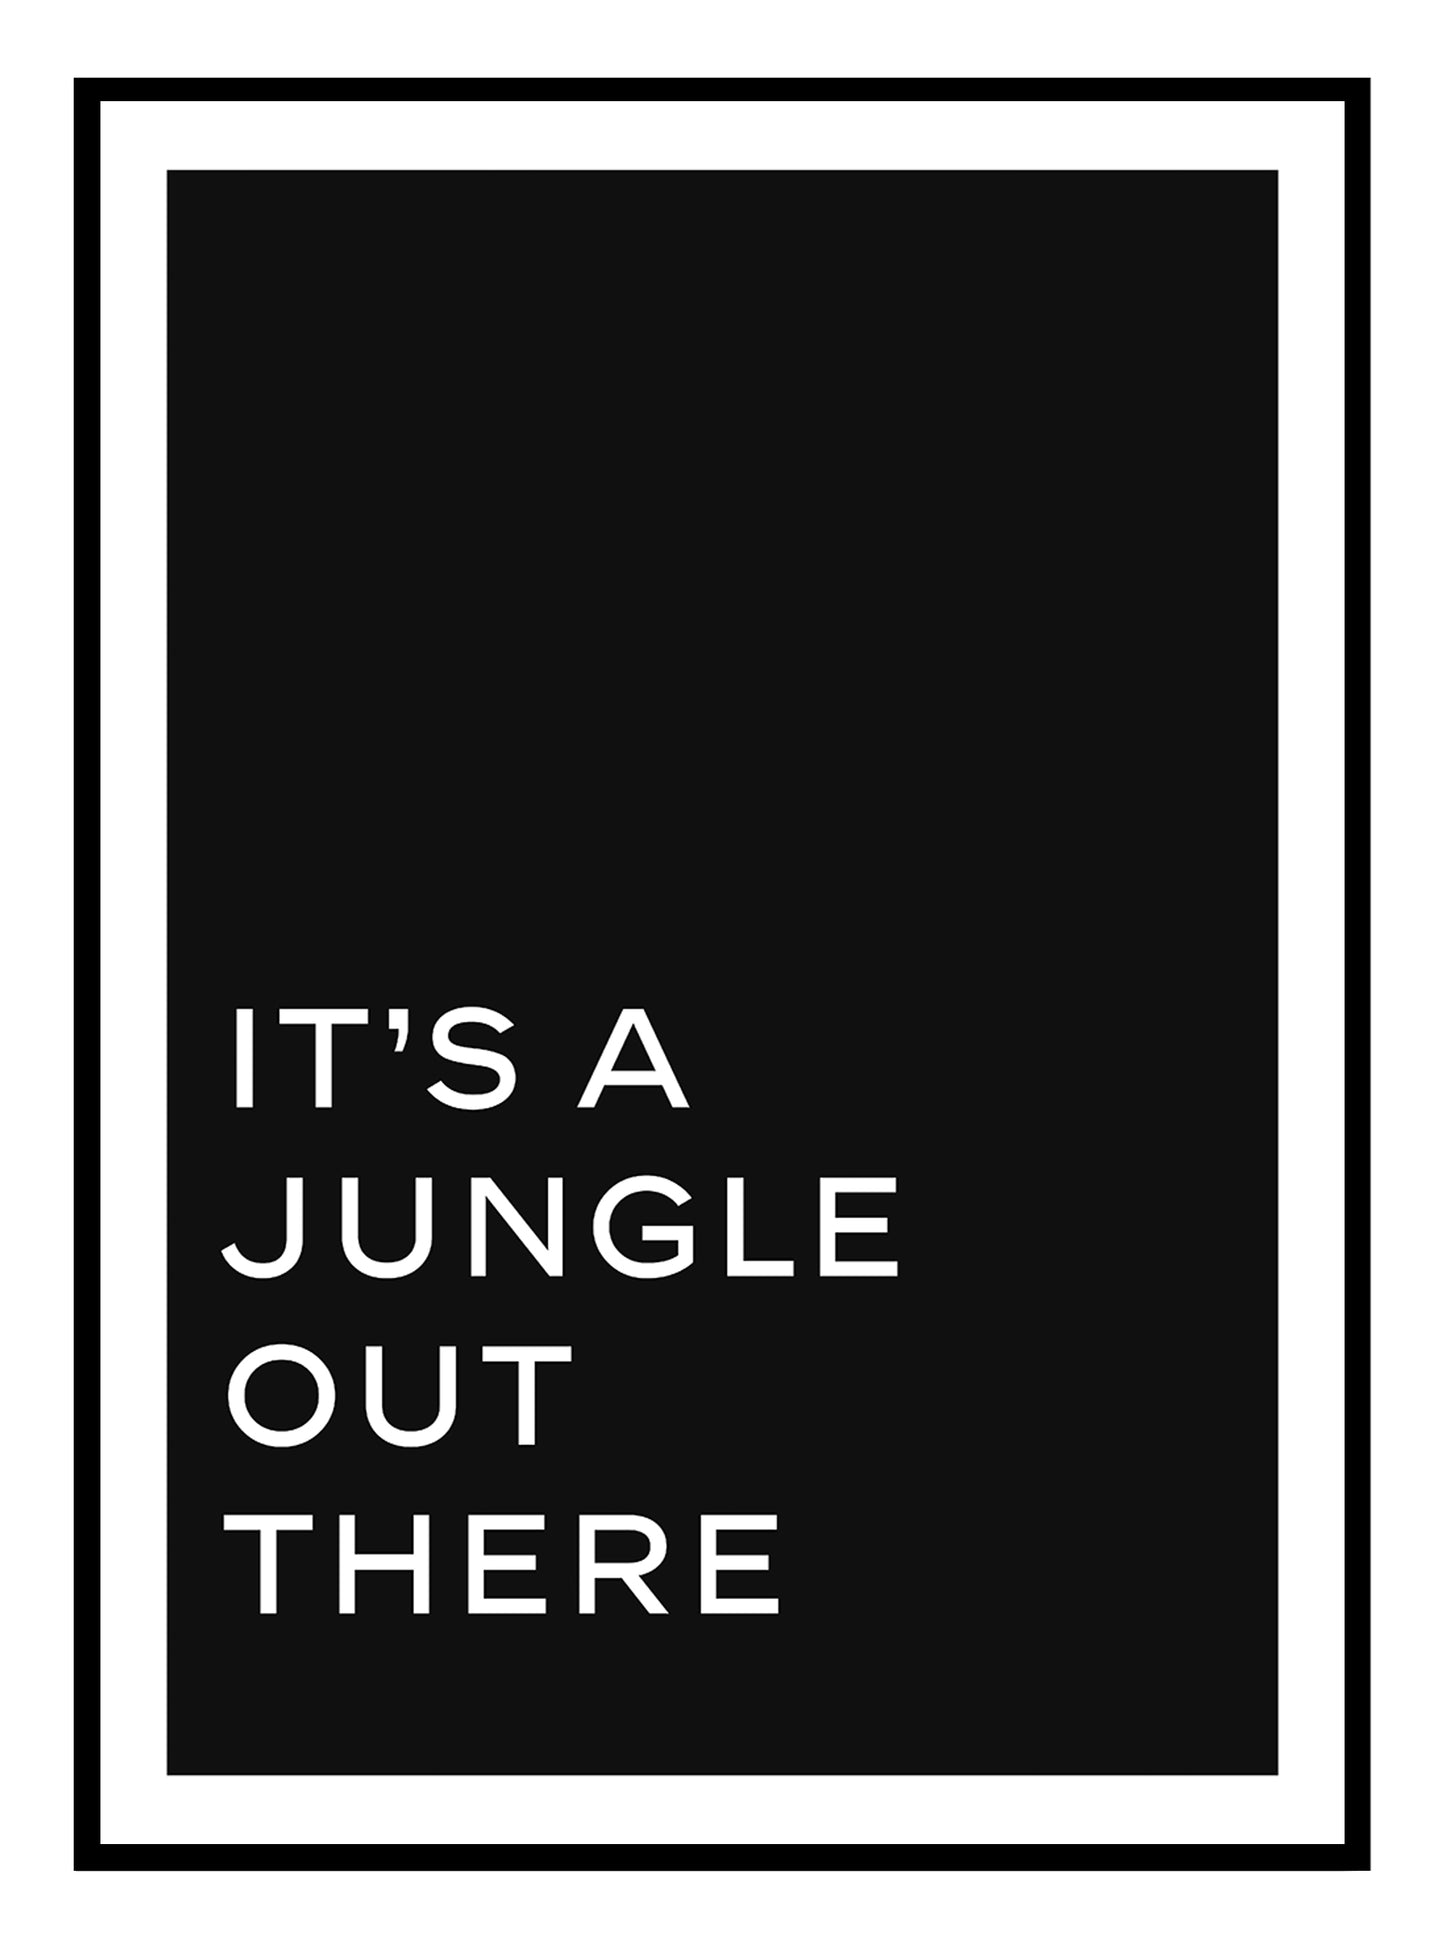 Stampa artistica di tipografia della giungla